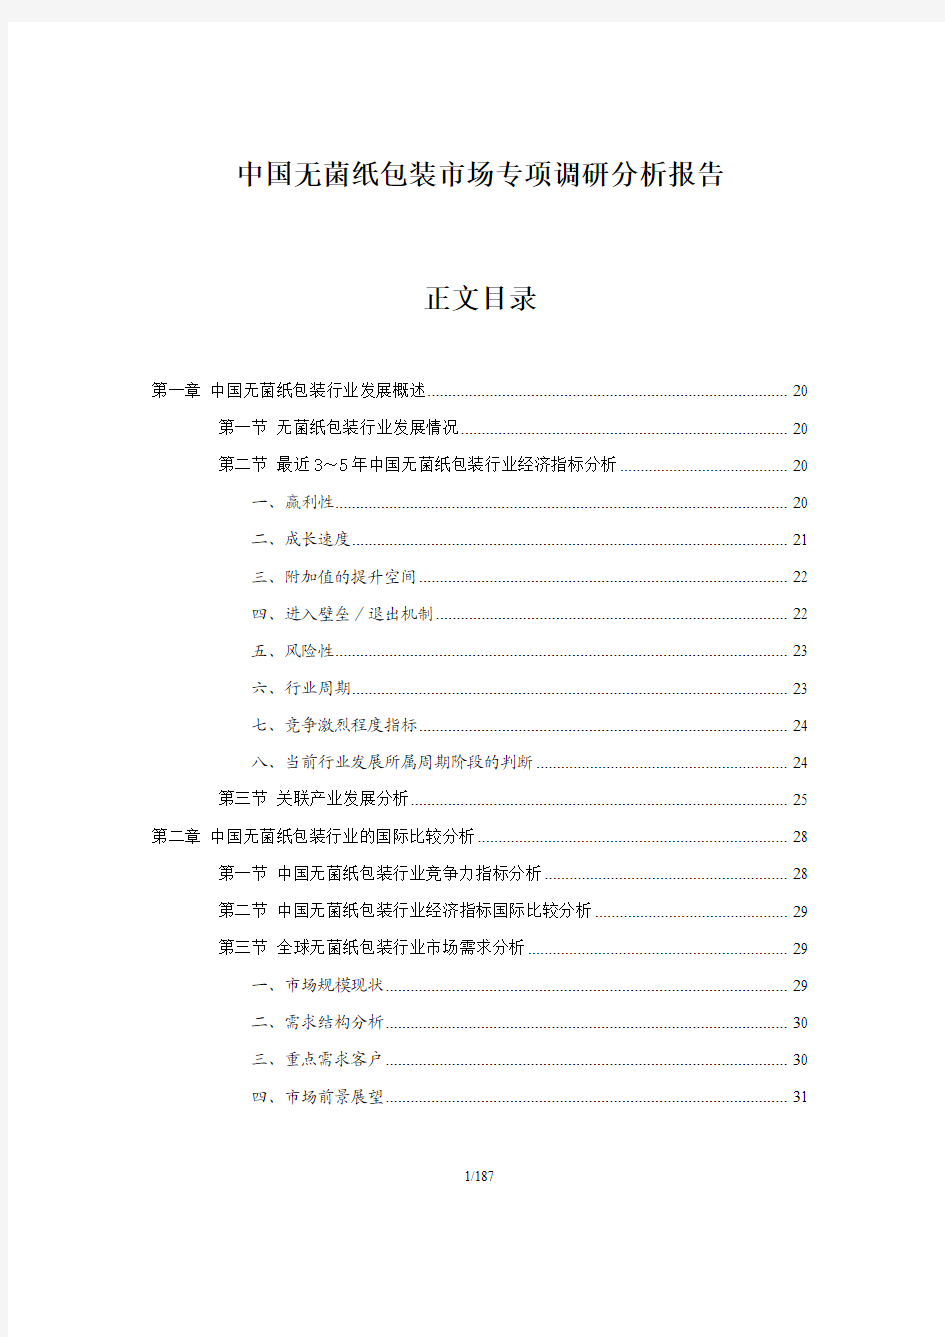 中国无菌纸包装市场研究分析报告(权威版)